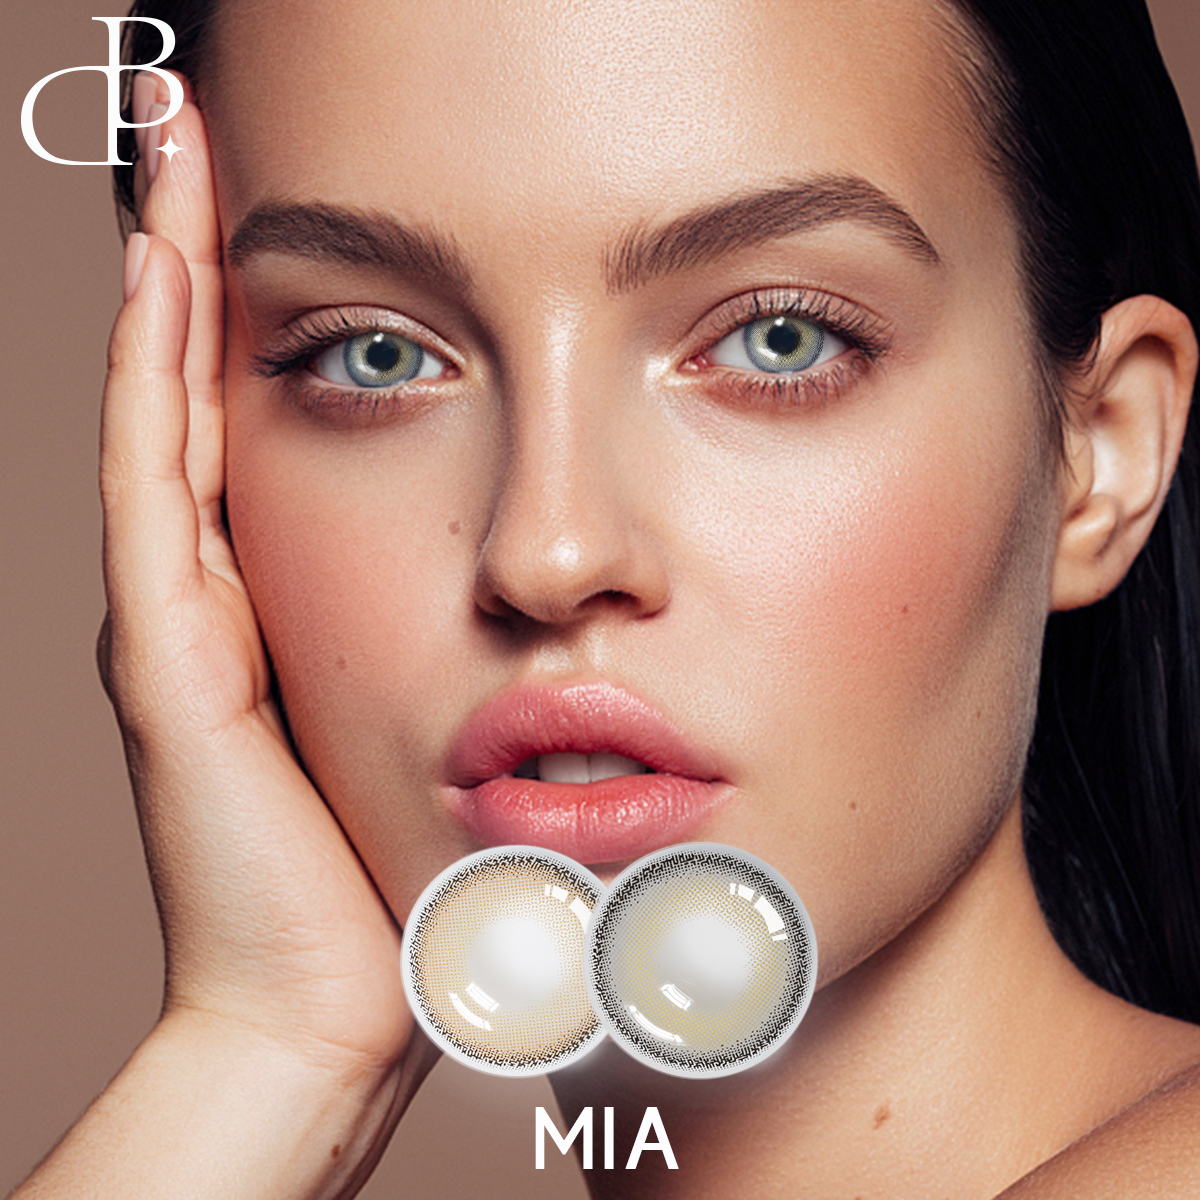 MIA veleprodaja jednogodišnje kontaktne leće u boji Originalne veleprodajne mekane kontaktne leće za oči 14,0 mm godišnje jeftine kontaktne leće u boji